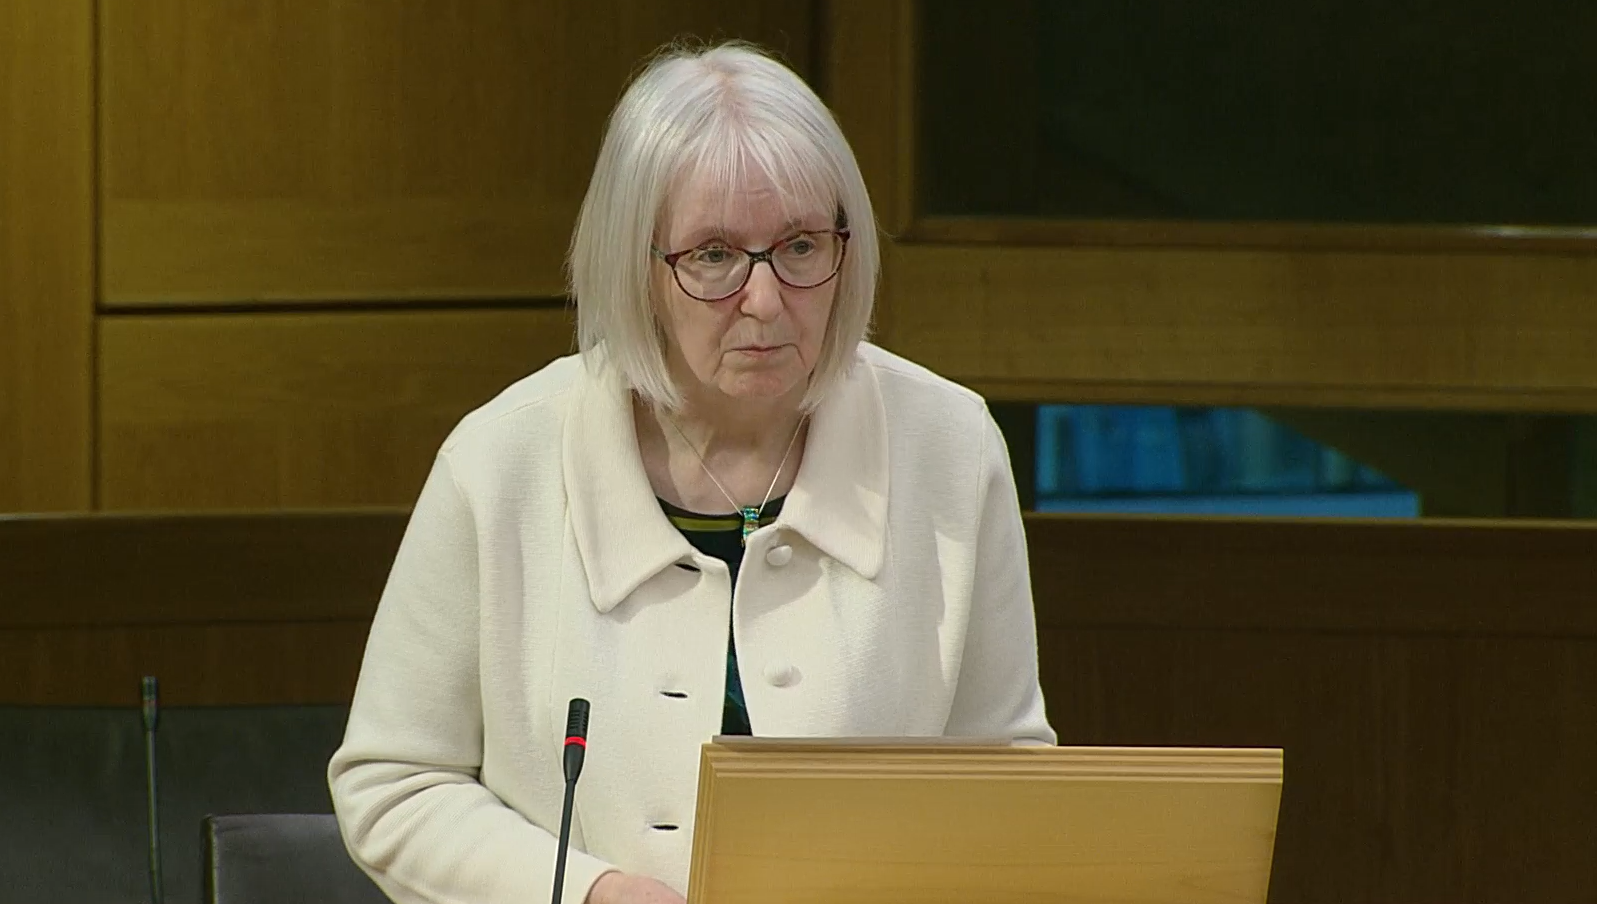 Beatrice Wishart speaking in the Scottish Parliament chamber